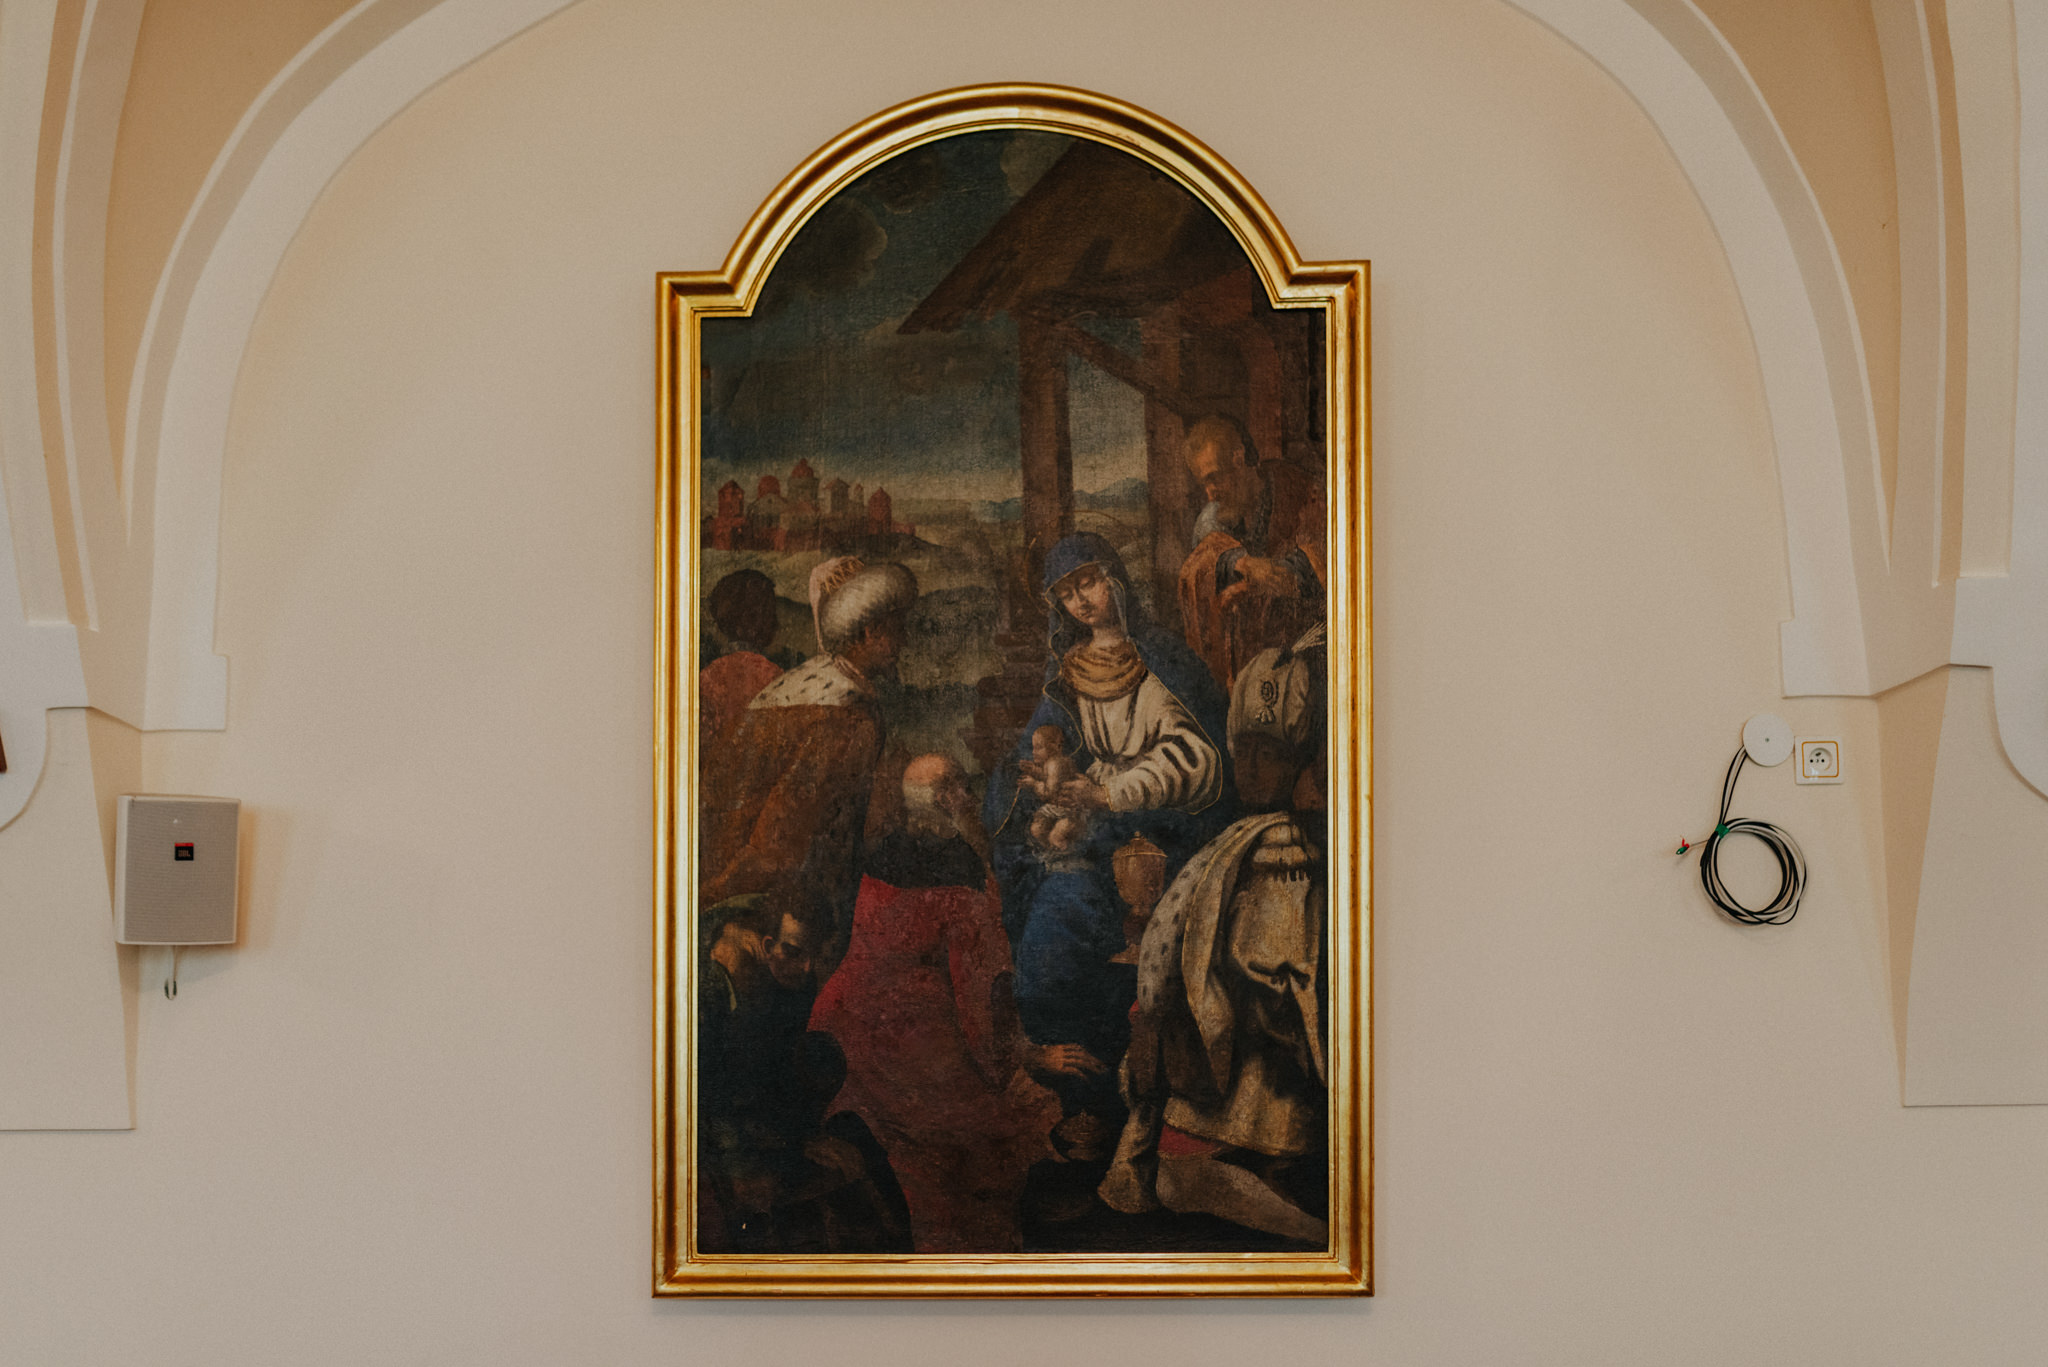 Chrzest Łucji | Sanktuarium Matki Bożej Częstochowskiej | Chrzest na Jasnej Górze w Częstochowie